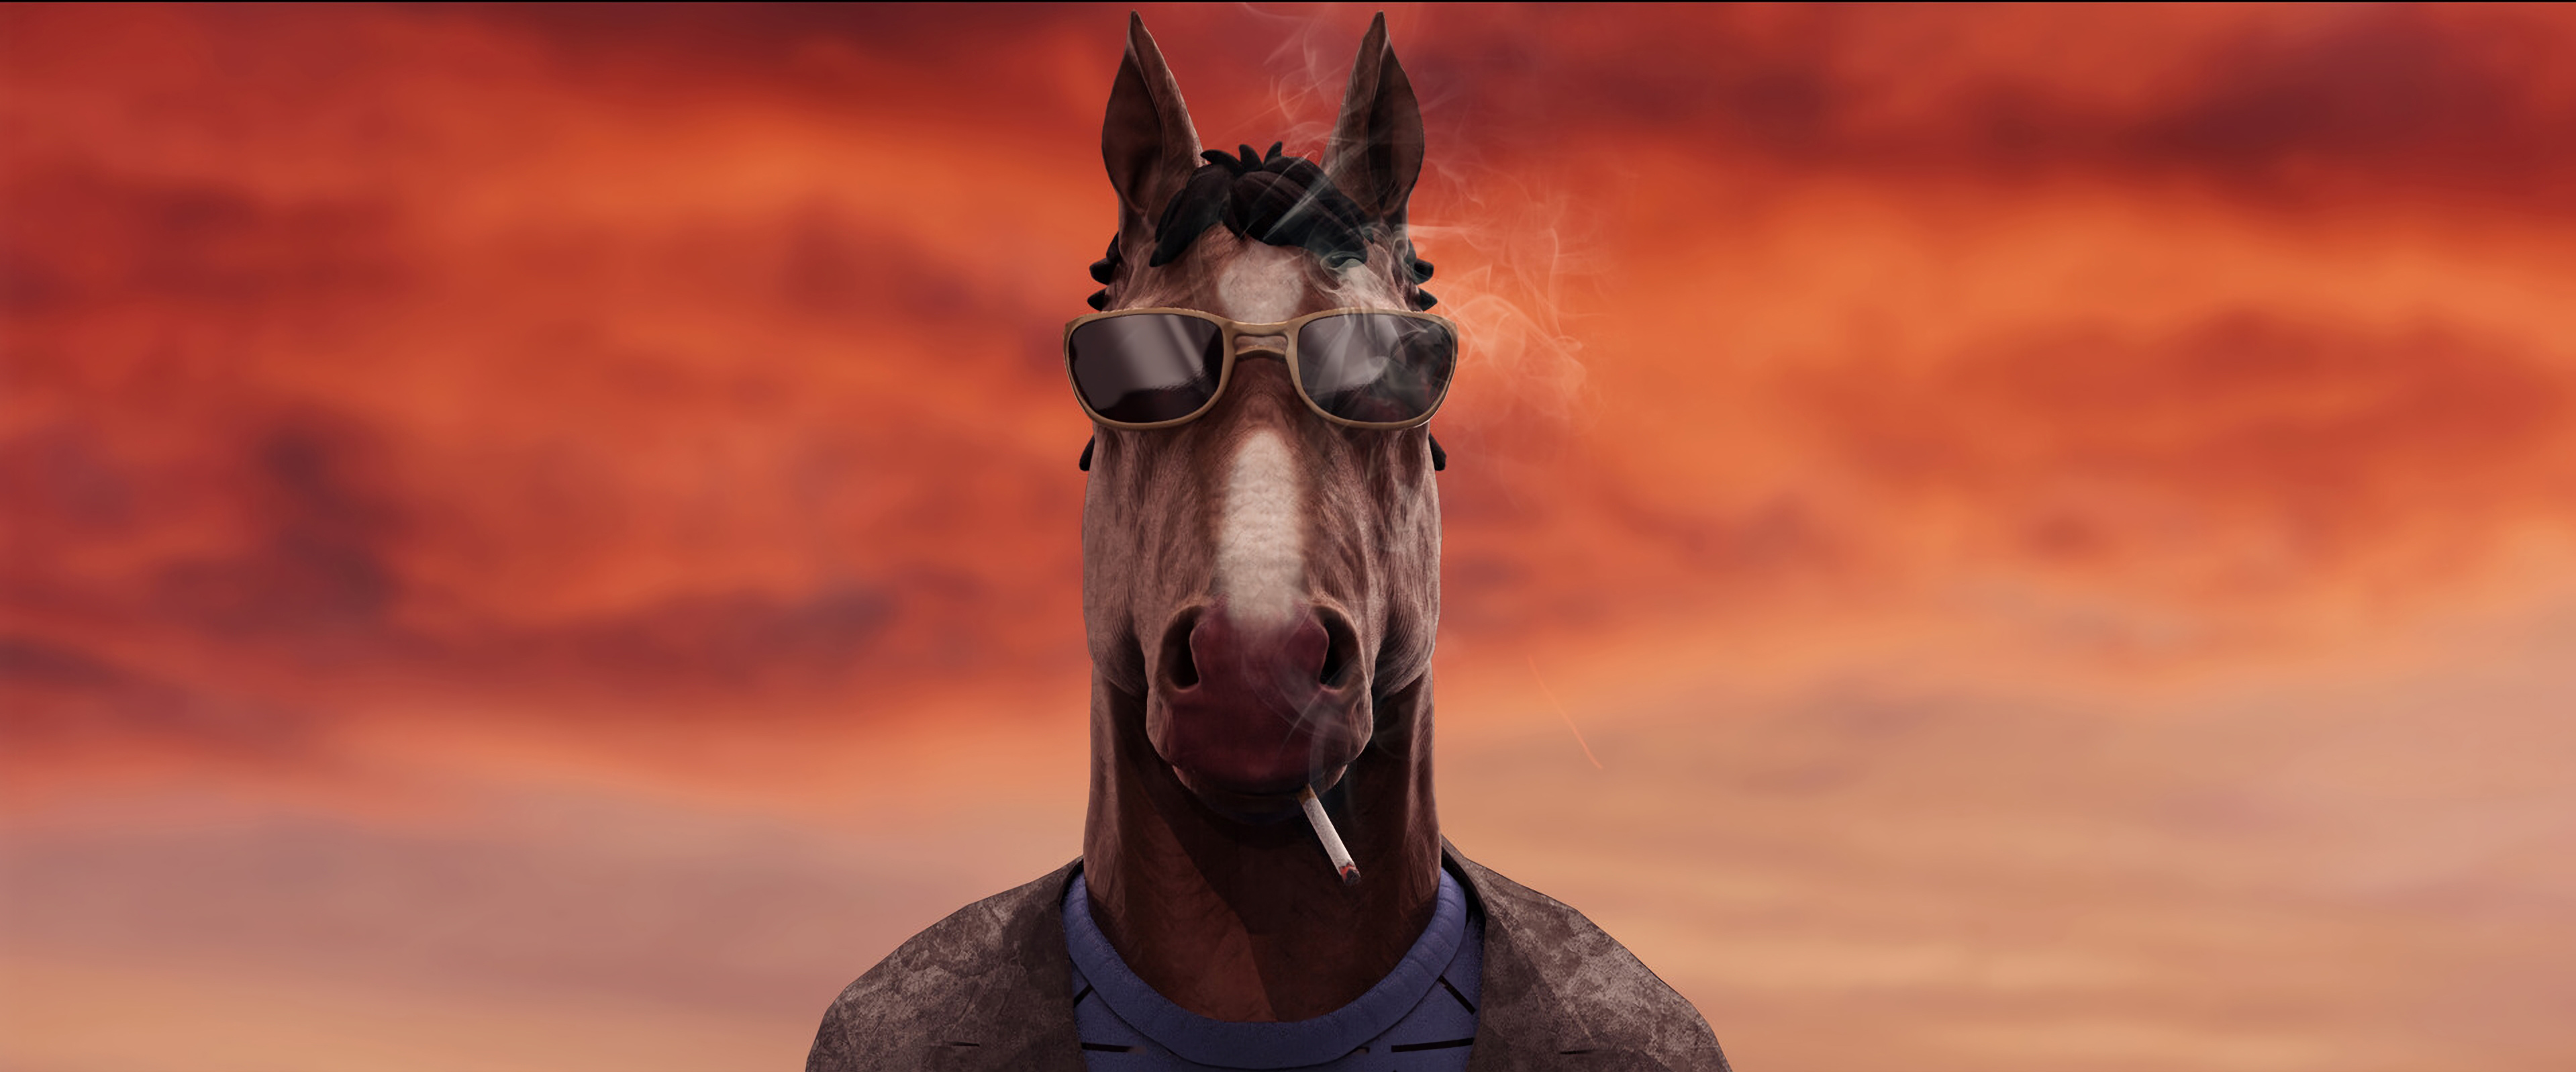 戴眼镜的野蛮马